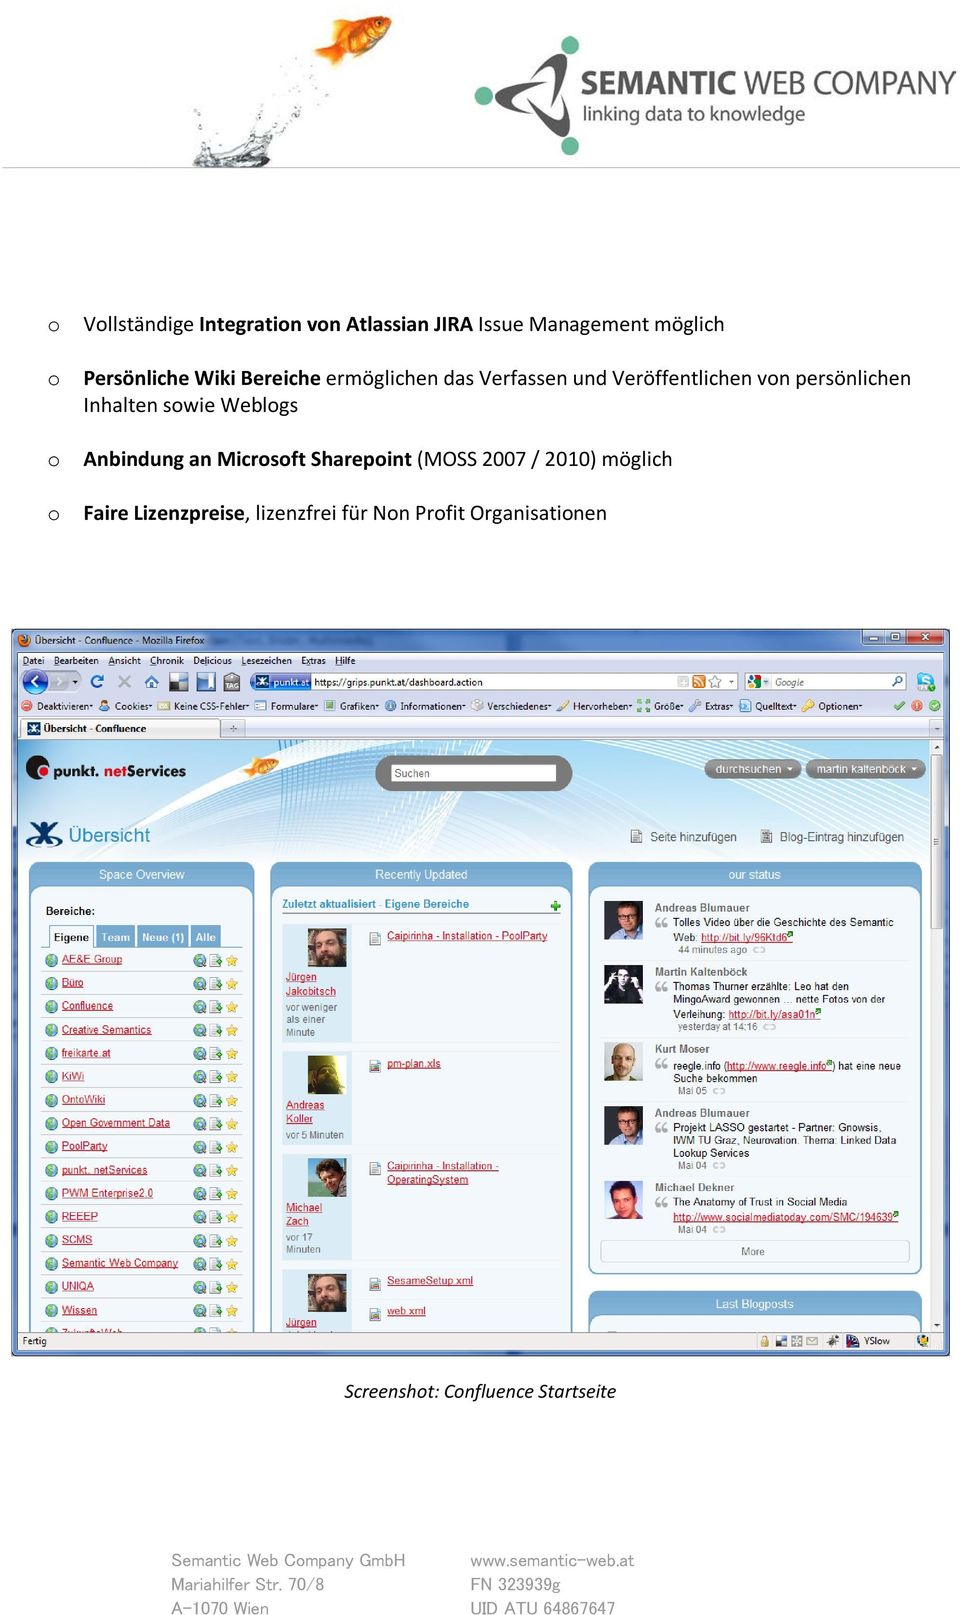 Inhalten swie Weblgs Anbindung an Micrsft Sharepint (MOSS 2007 / 2010) möglich